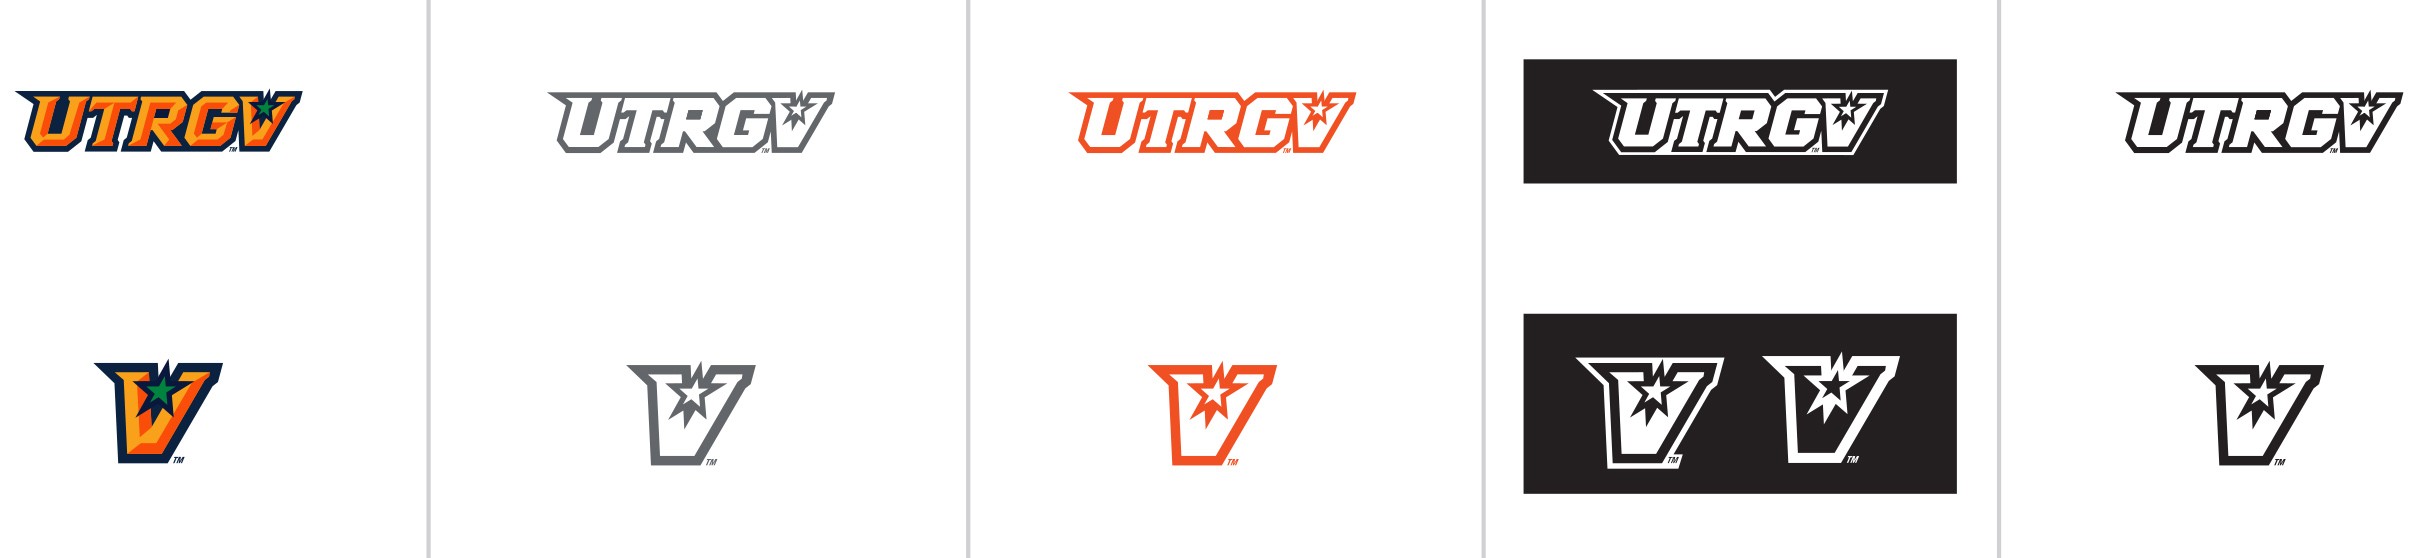 UTRGV Logos Variations